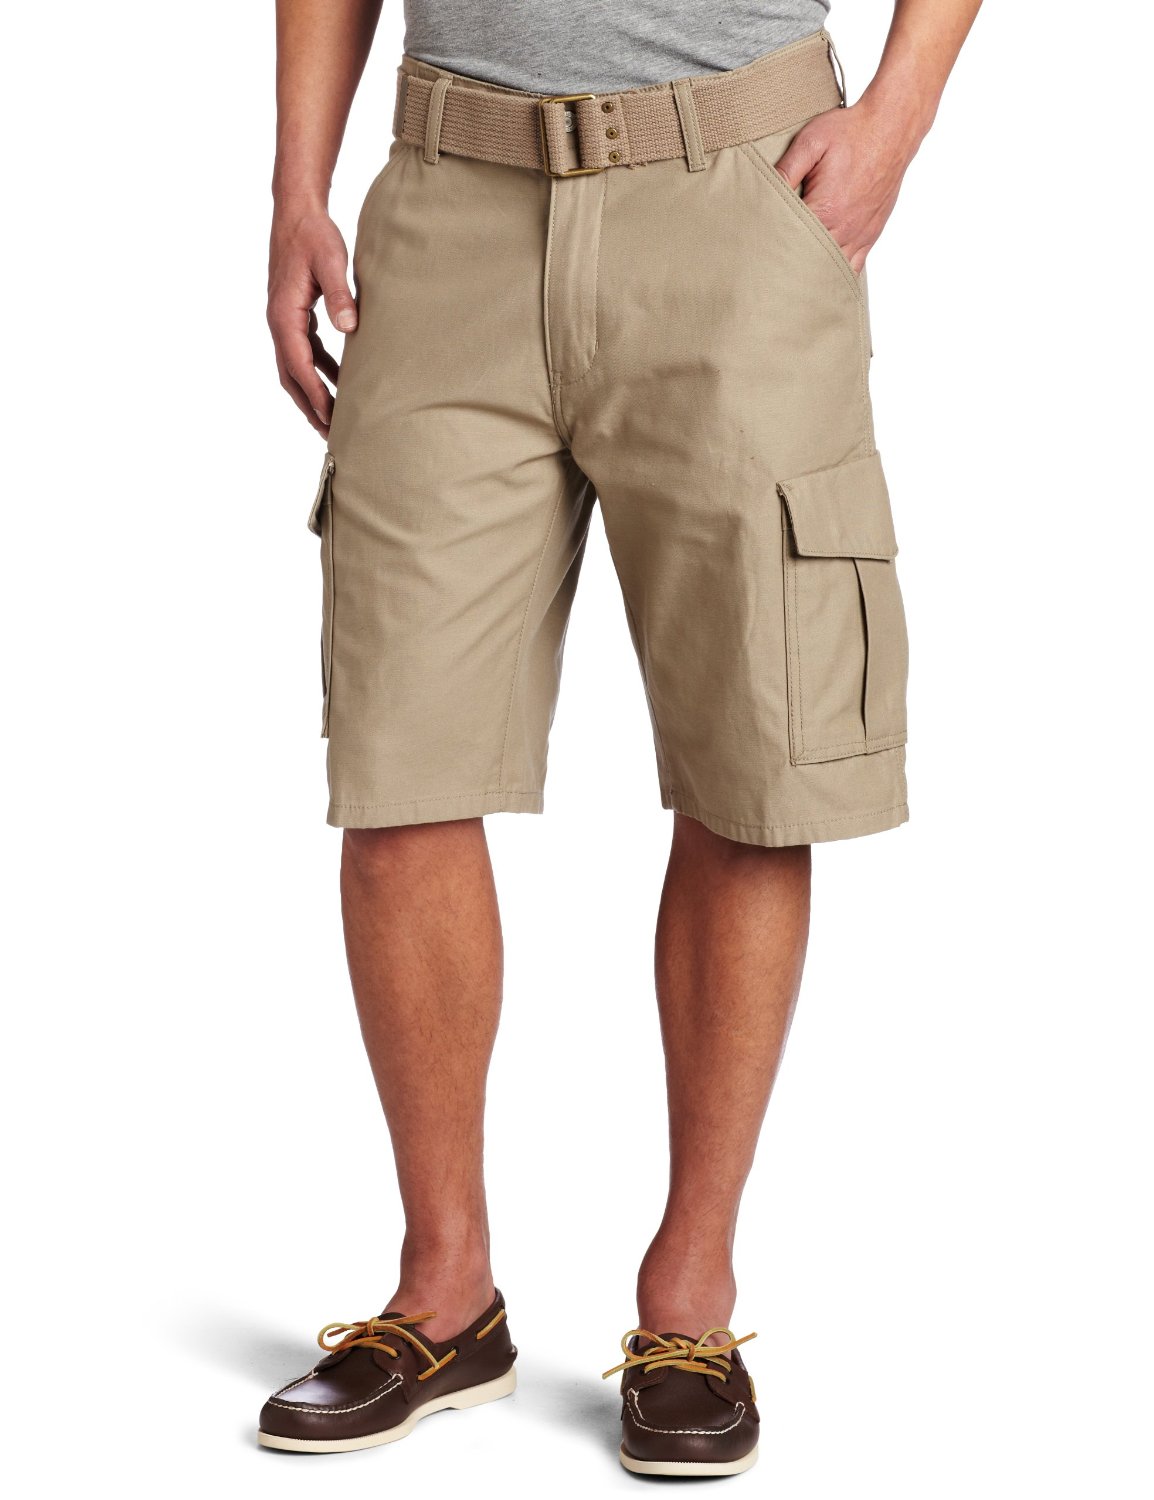 降价了！李维斯 Levi's 男款工装休闲短裤 最低仅售$21.14 (64%off)，用服饰邮件订阅获取8折券 ，最终价格仅为$16.91